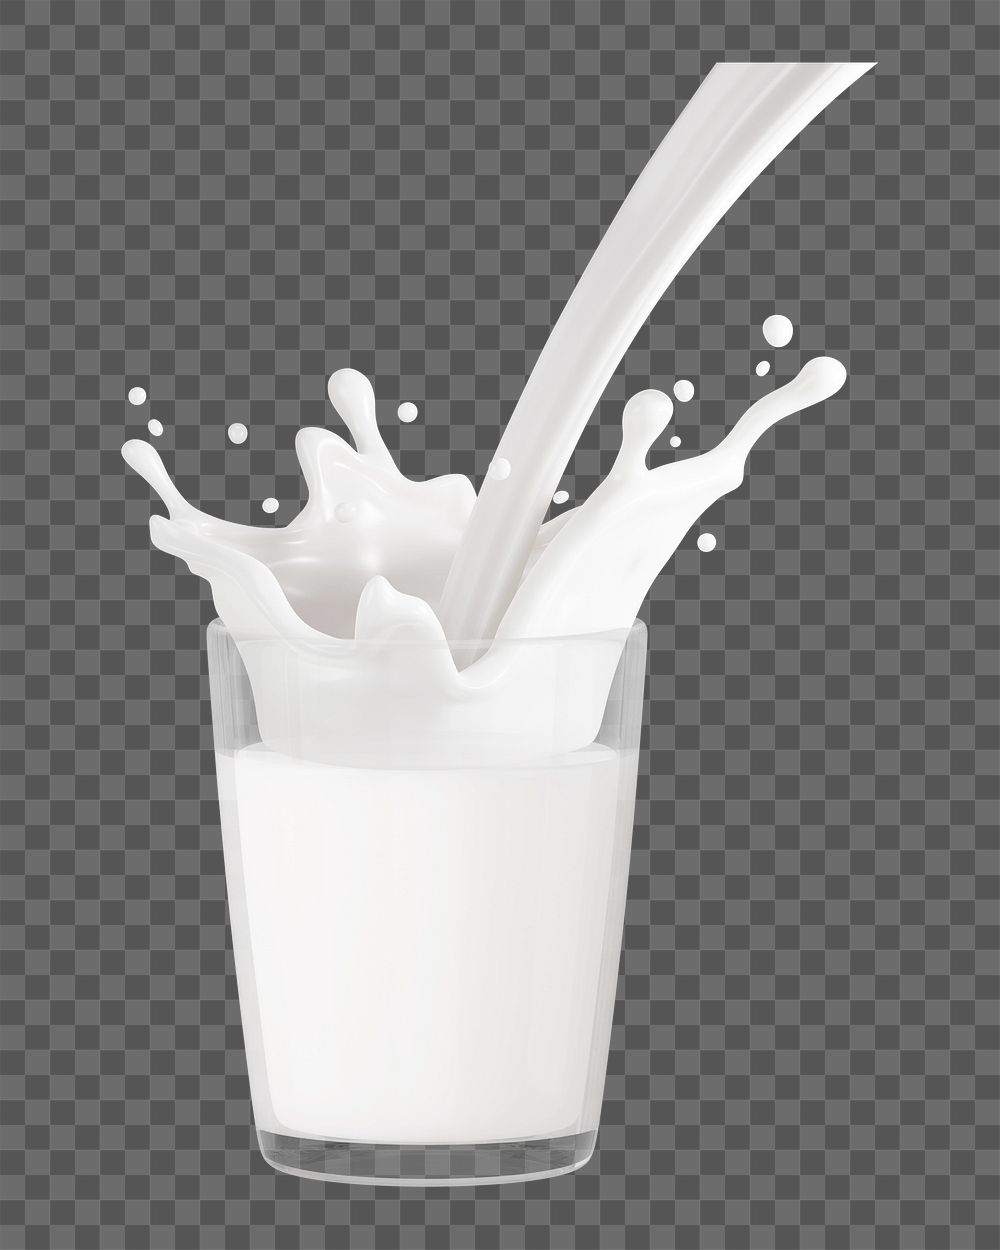 PNG 3D glass of milk, element illustration, transparent background